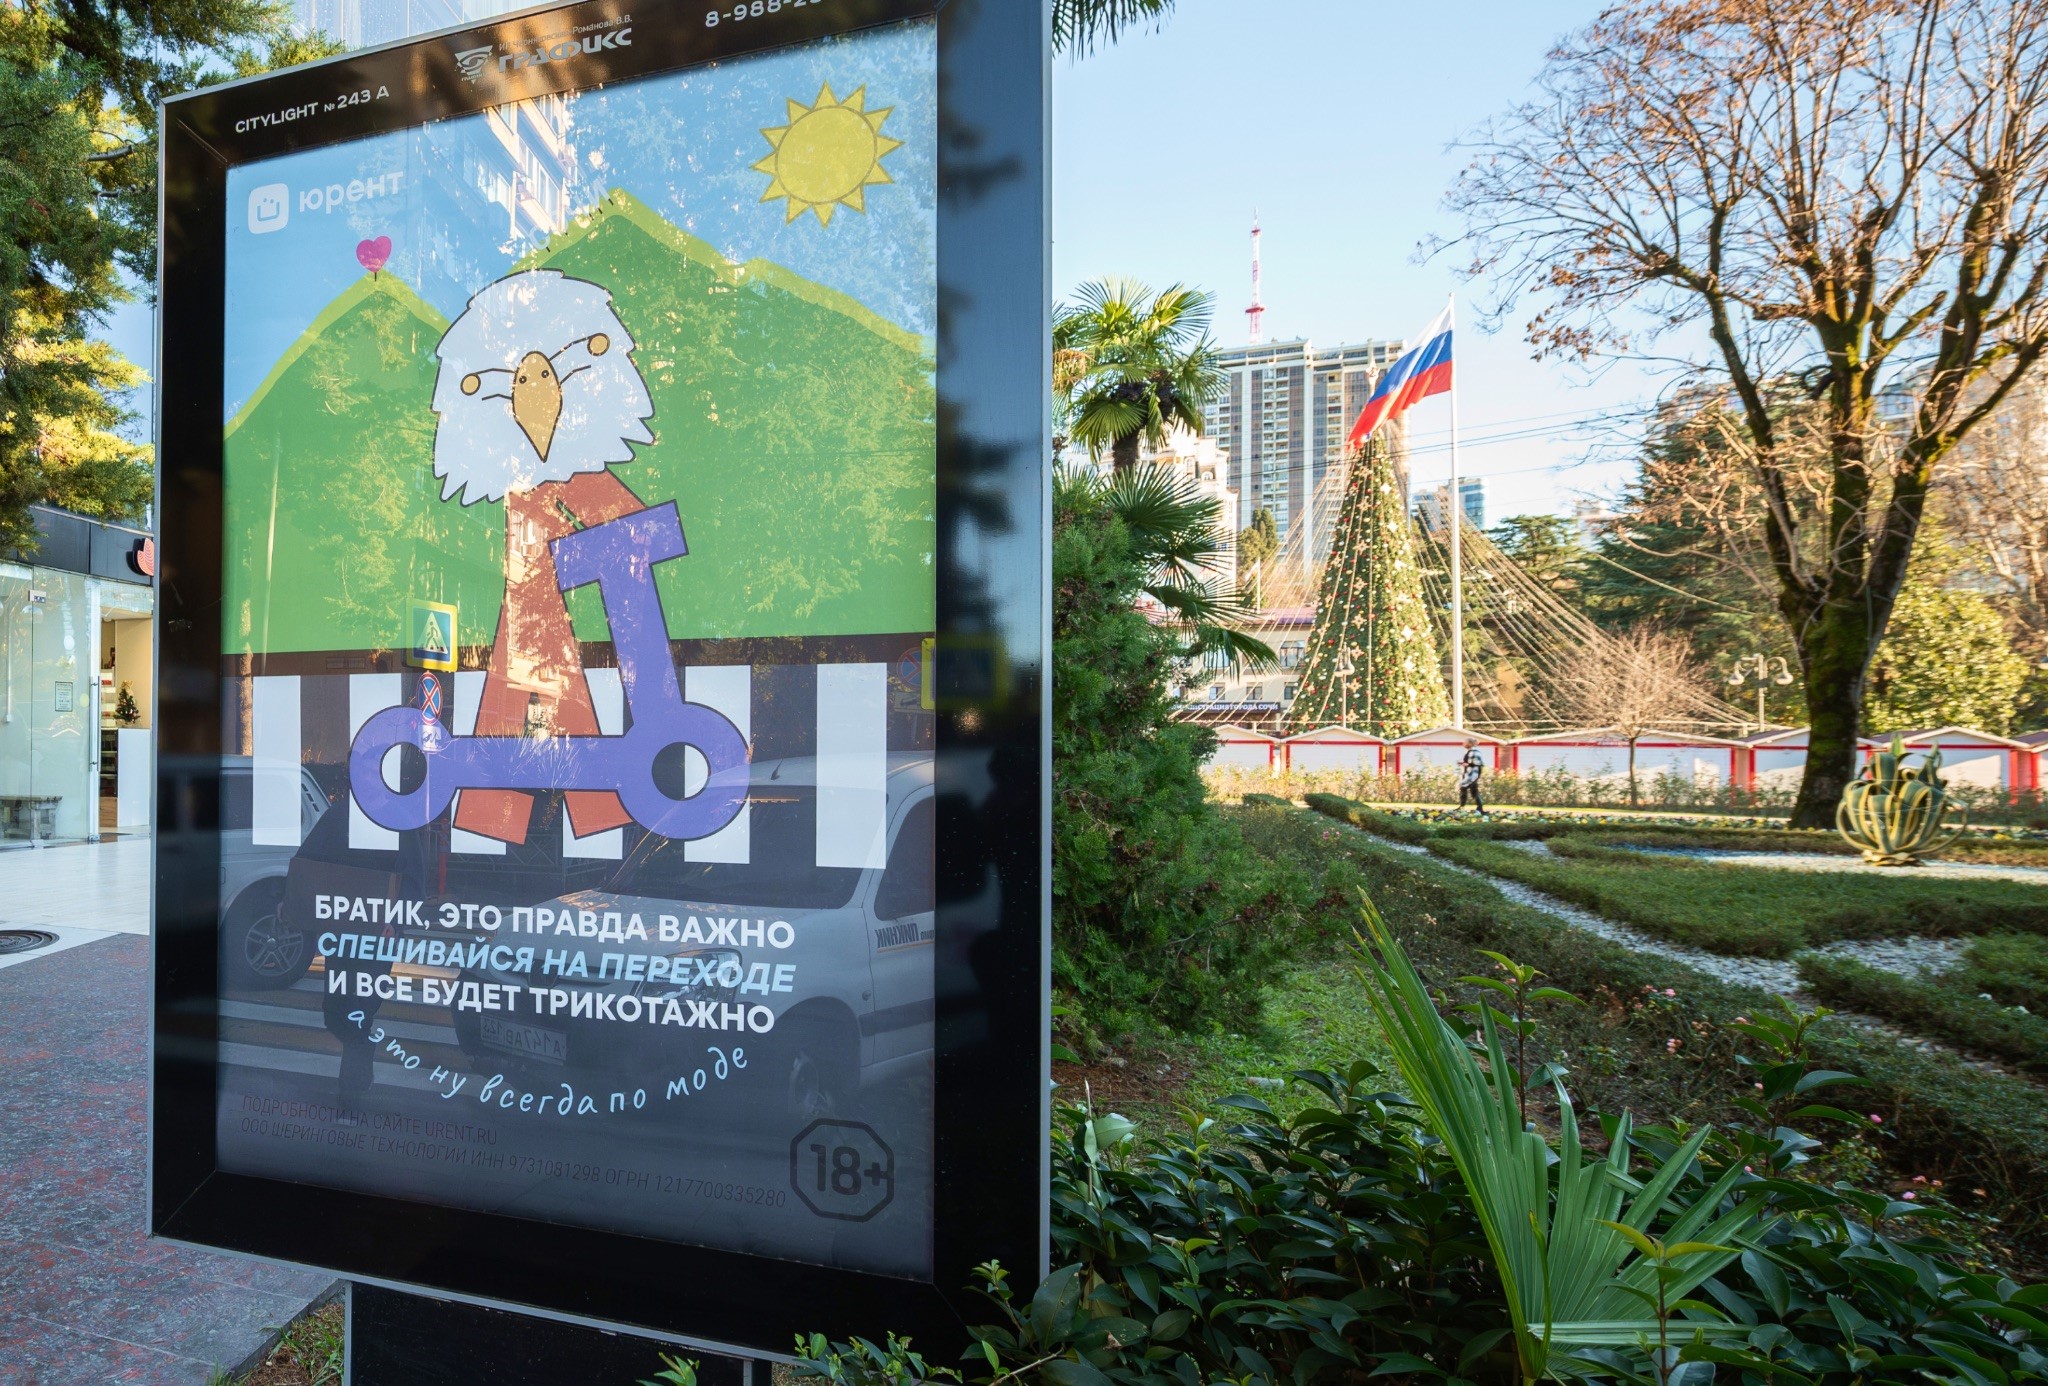 Краснодарский самокатный рай: "Юрент" запустил акцию о правилах дорожного движения в Сочи, где самокаты работают круглый год | Новости компании